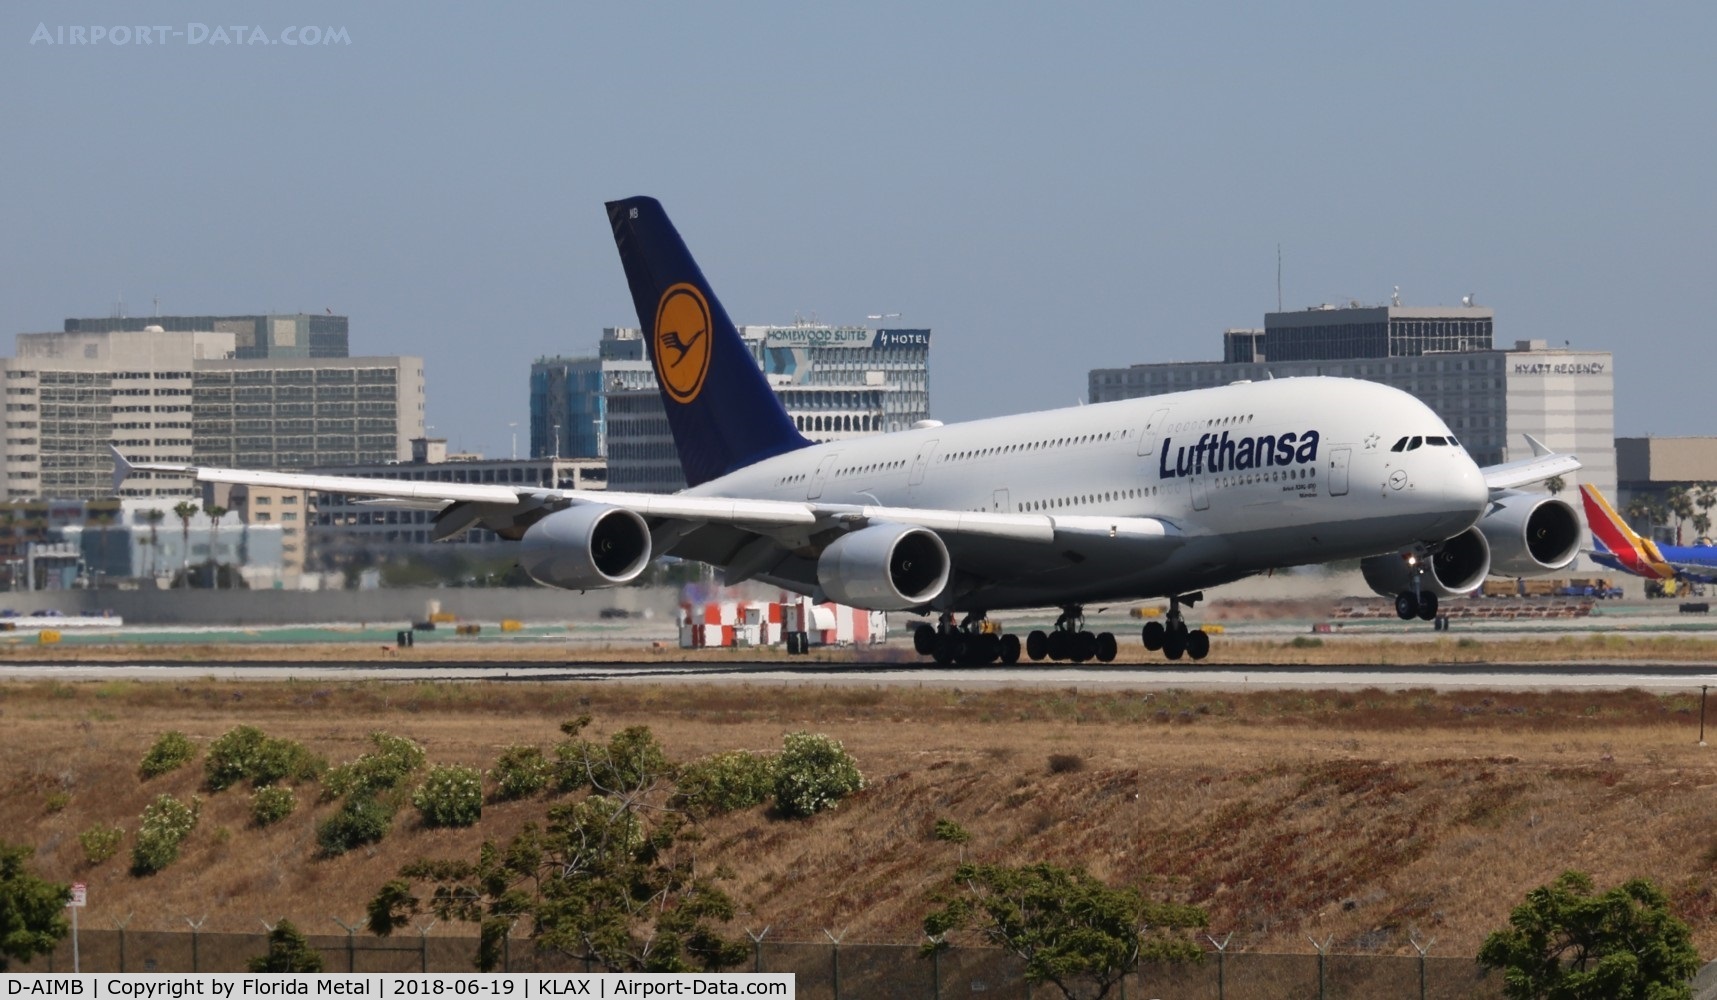 D-AIMB, 2010 Airbus A380-841 C/N 041, Lufthansa A380 zx